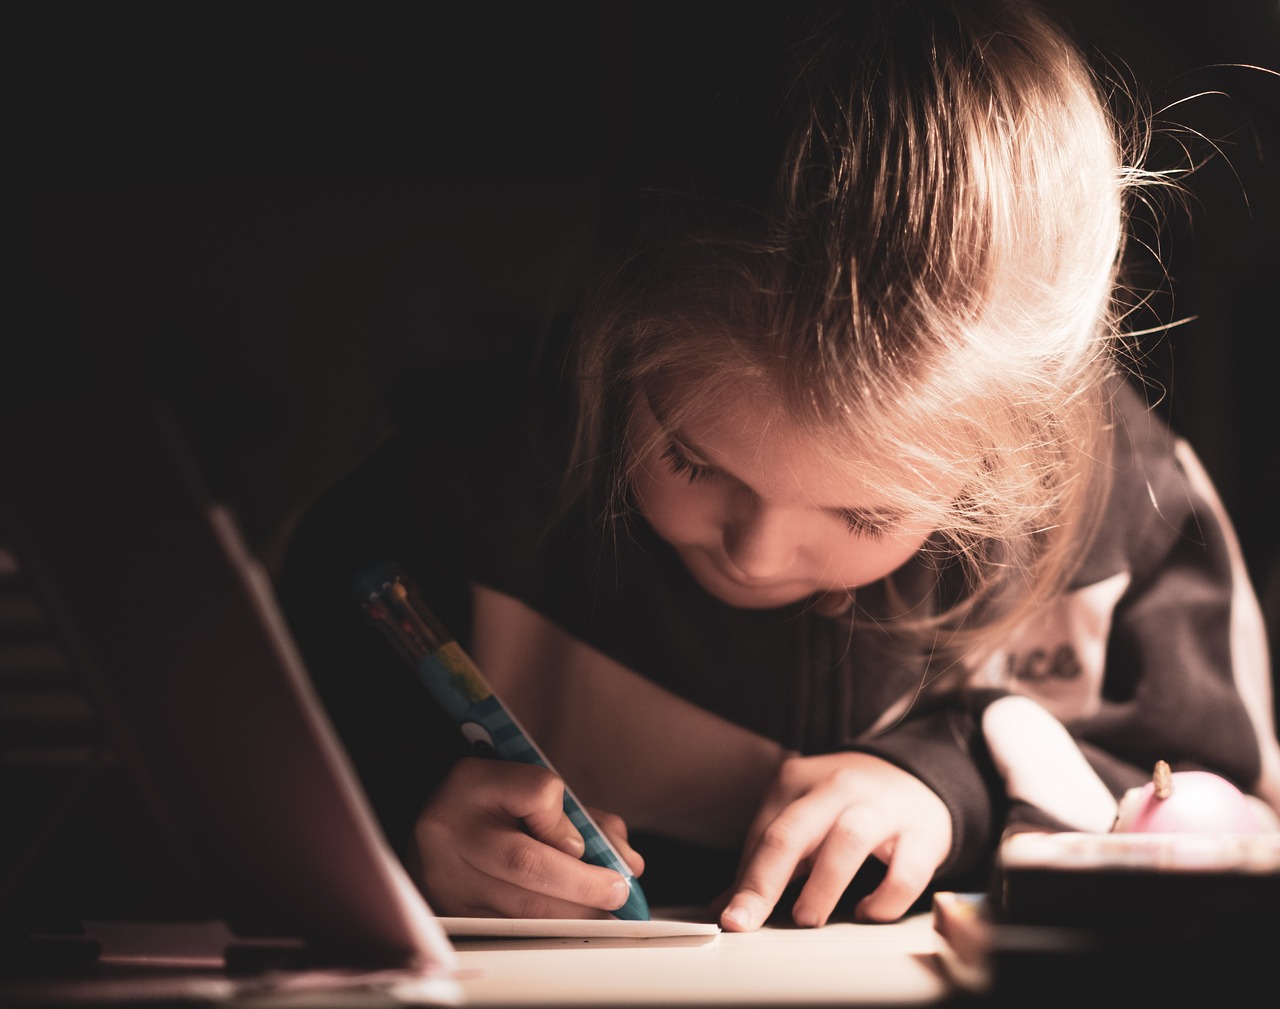 zdjęcie dziewczynki, która pisze w zeszycie piórem kulkowym